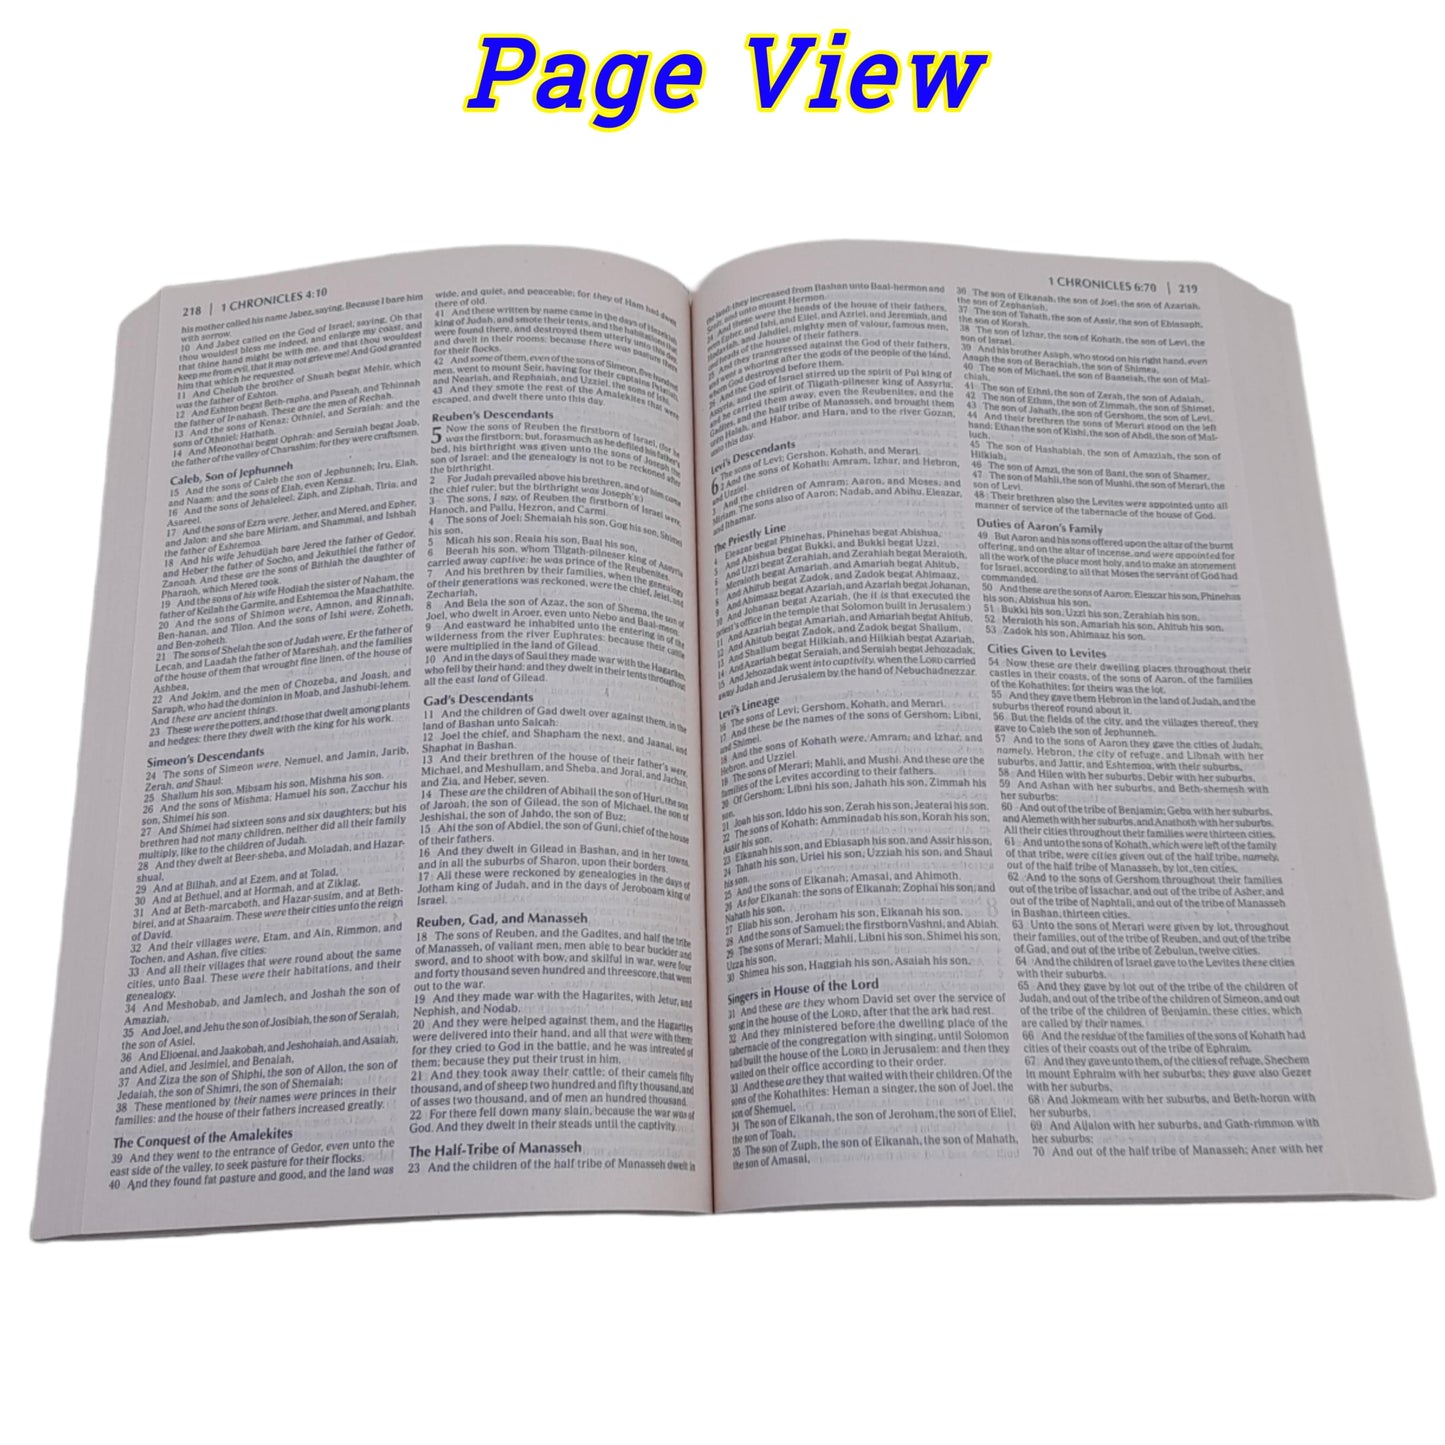 King James Version Holy Bible | English Bible